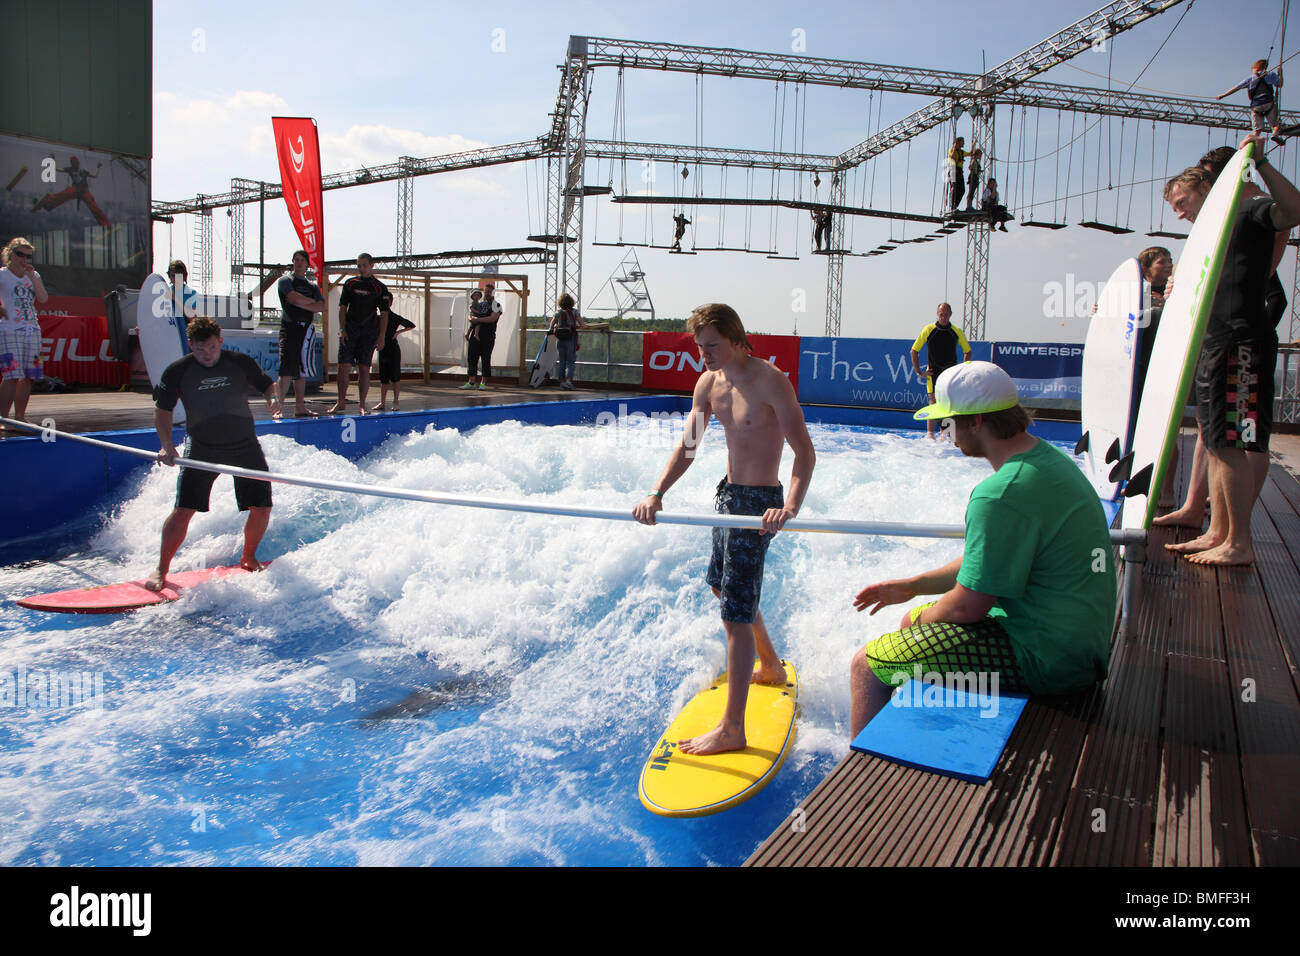 L'onda artificiale onde da surf in una piscina. Le persone imparano a navigare, buon surfer può mostrare le loro abilità. Foto Stock